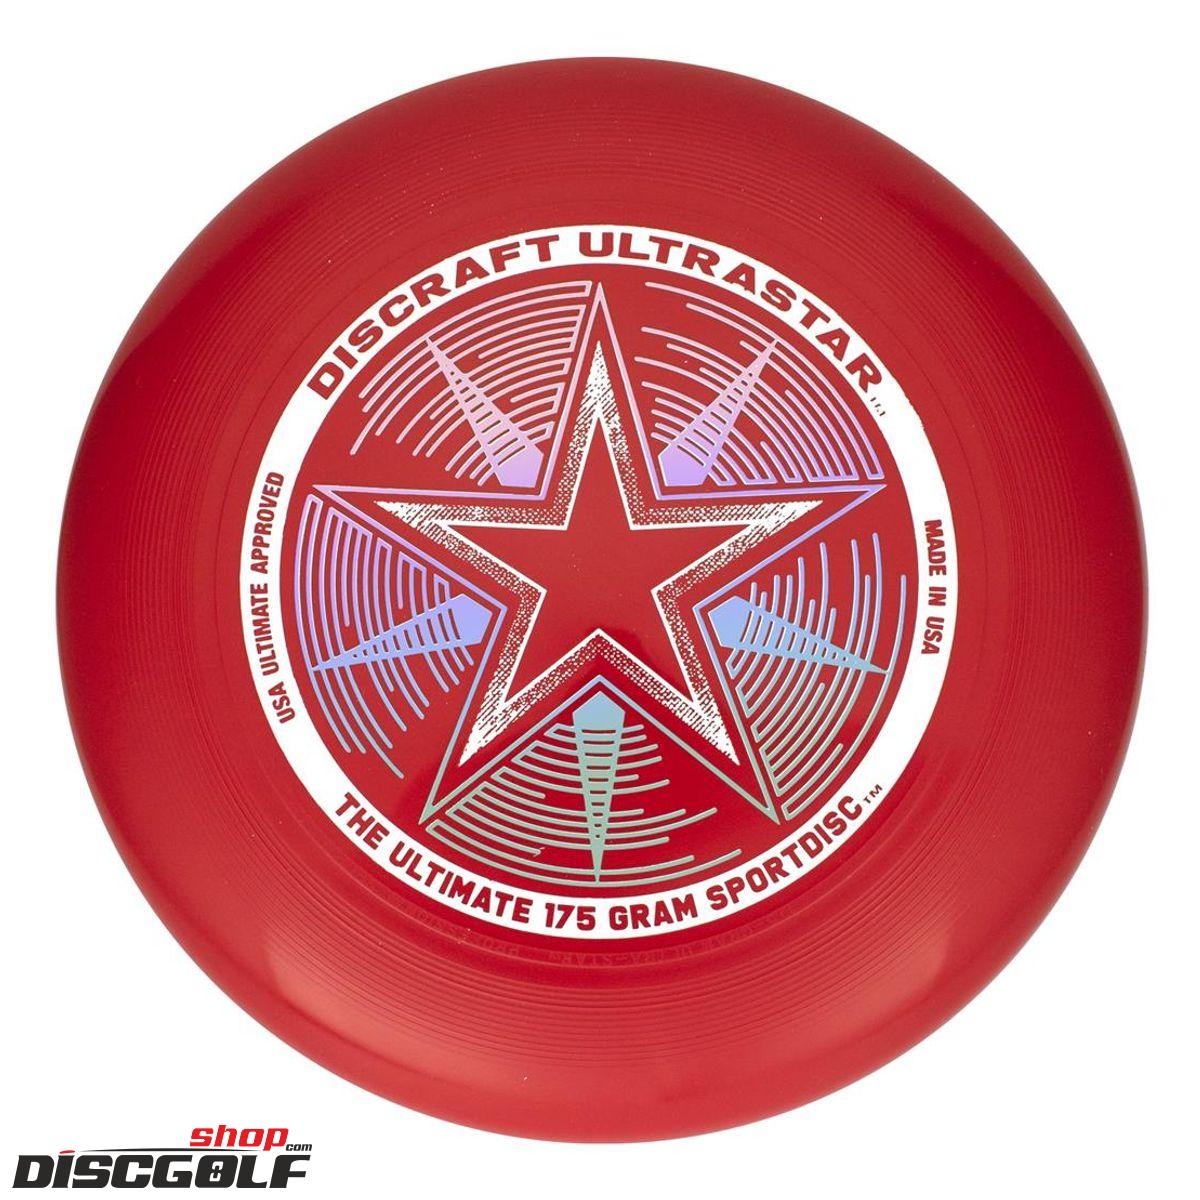 Discraft UltraStar Červená-tmavá/Red-dark